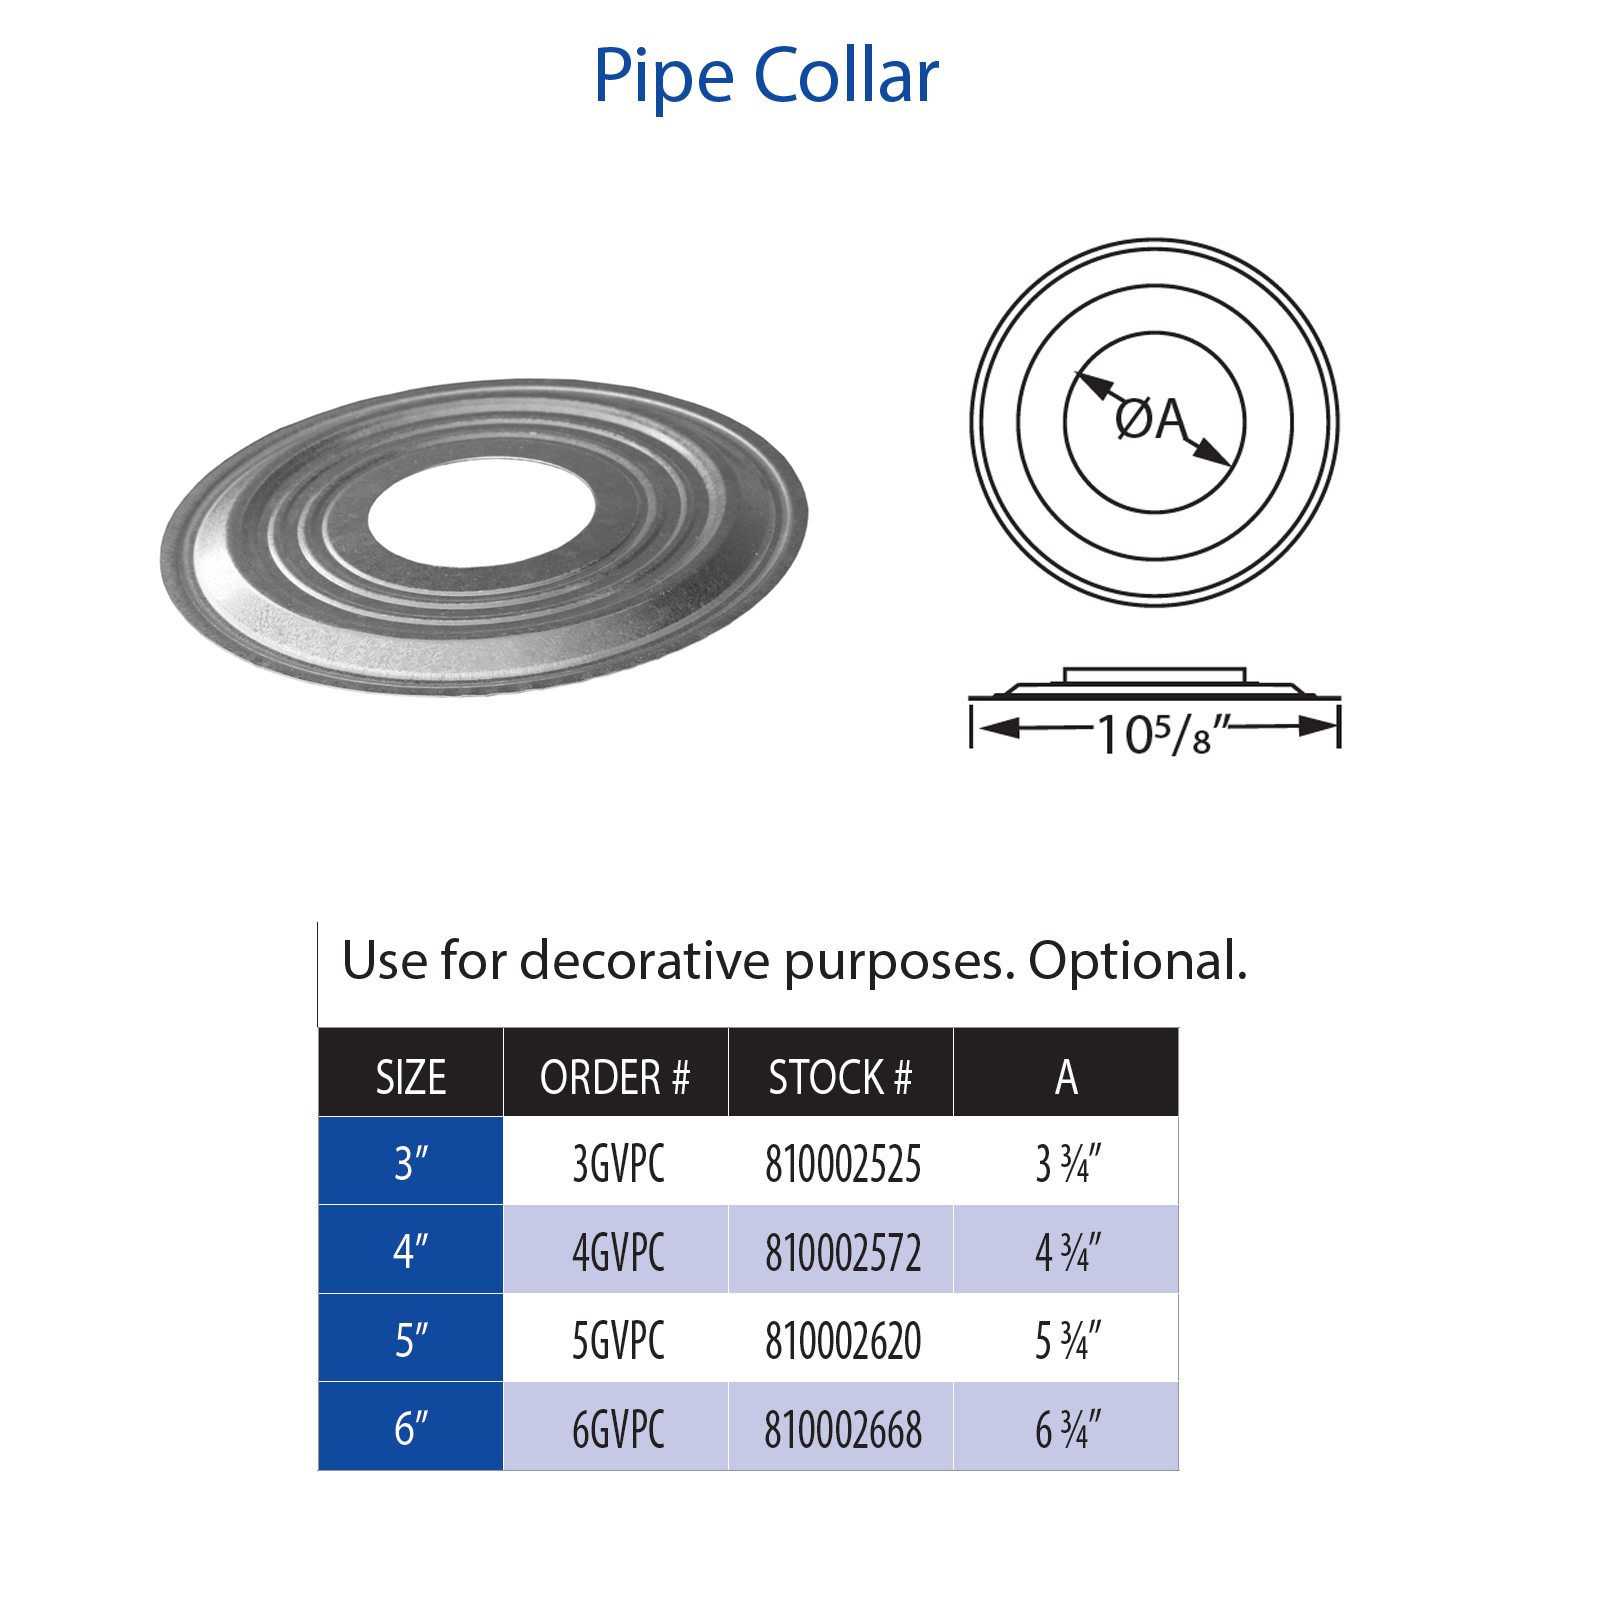 DuraVent Type B Pipe Collar | 4GVPC